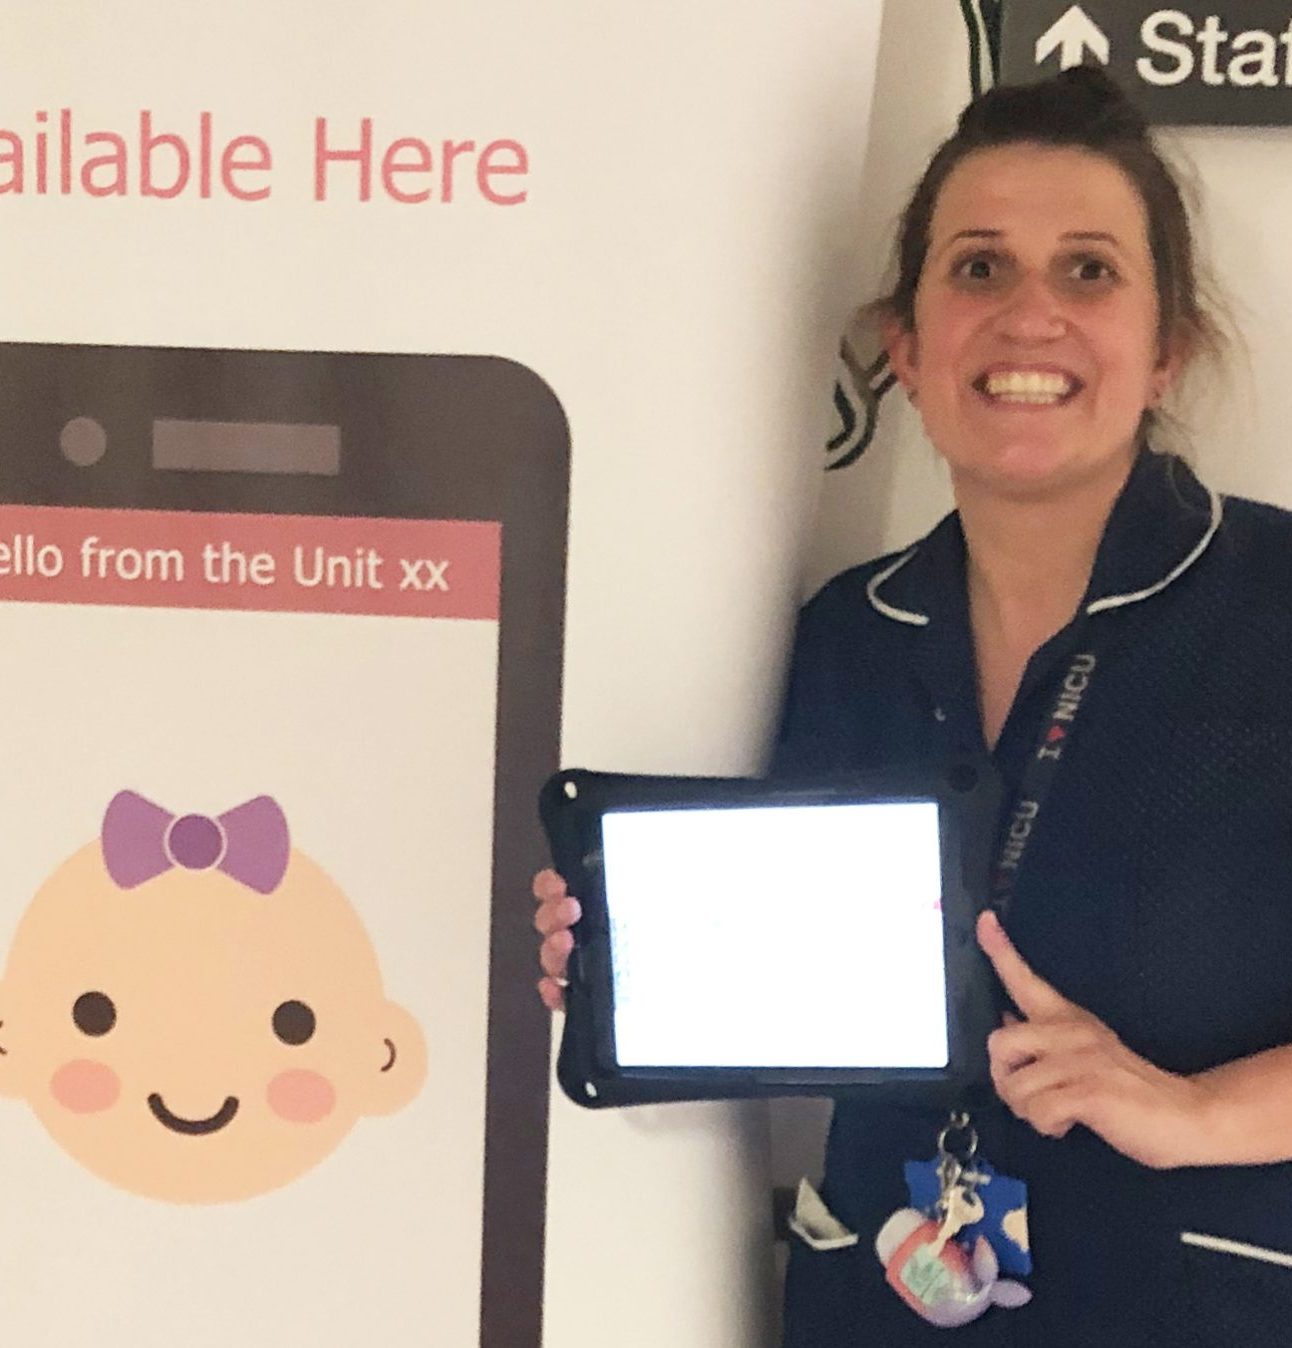 A nurse holding an iPad